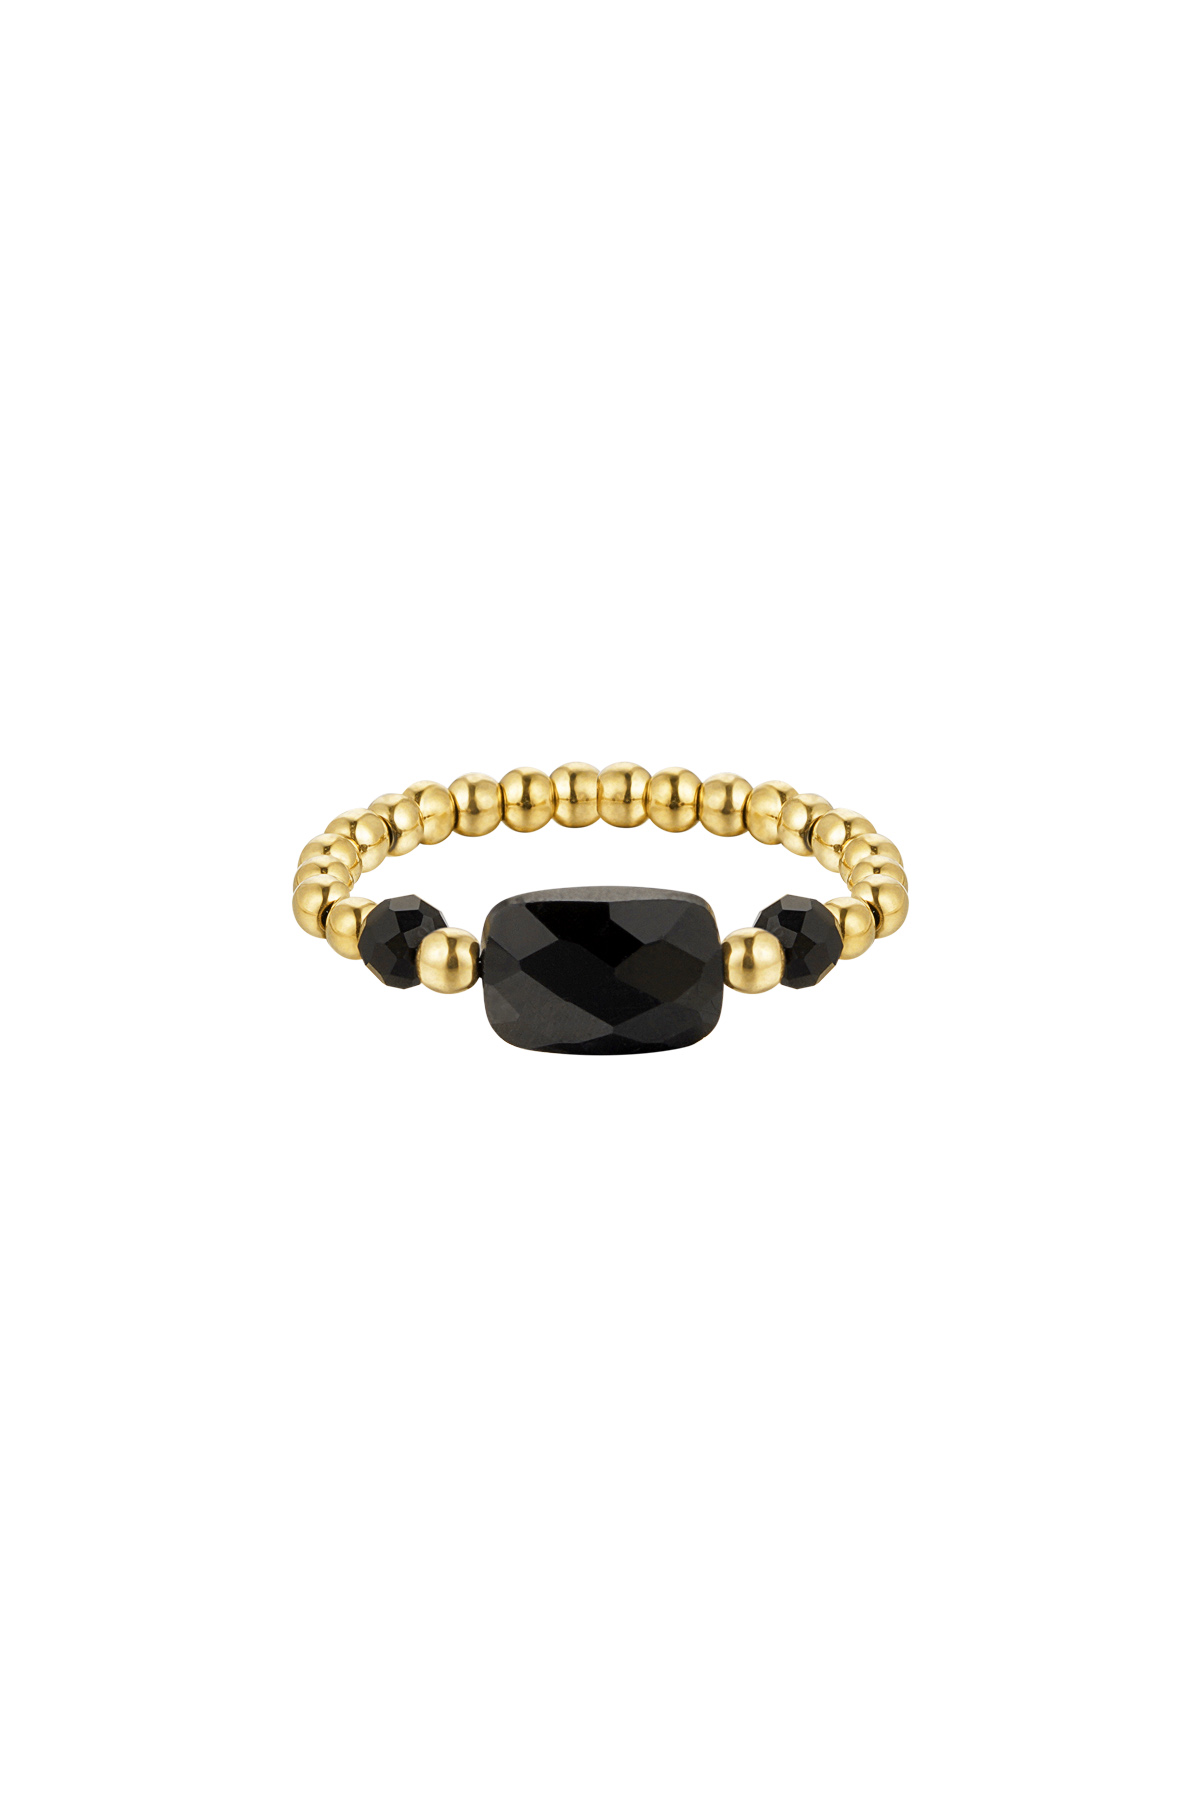 Anello elastico tre perle - nero - Collezione pietre naturali Black & Gold Stone One size h5 